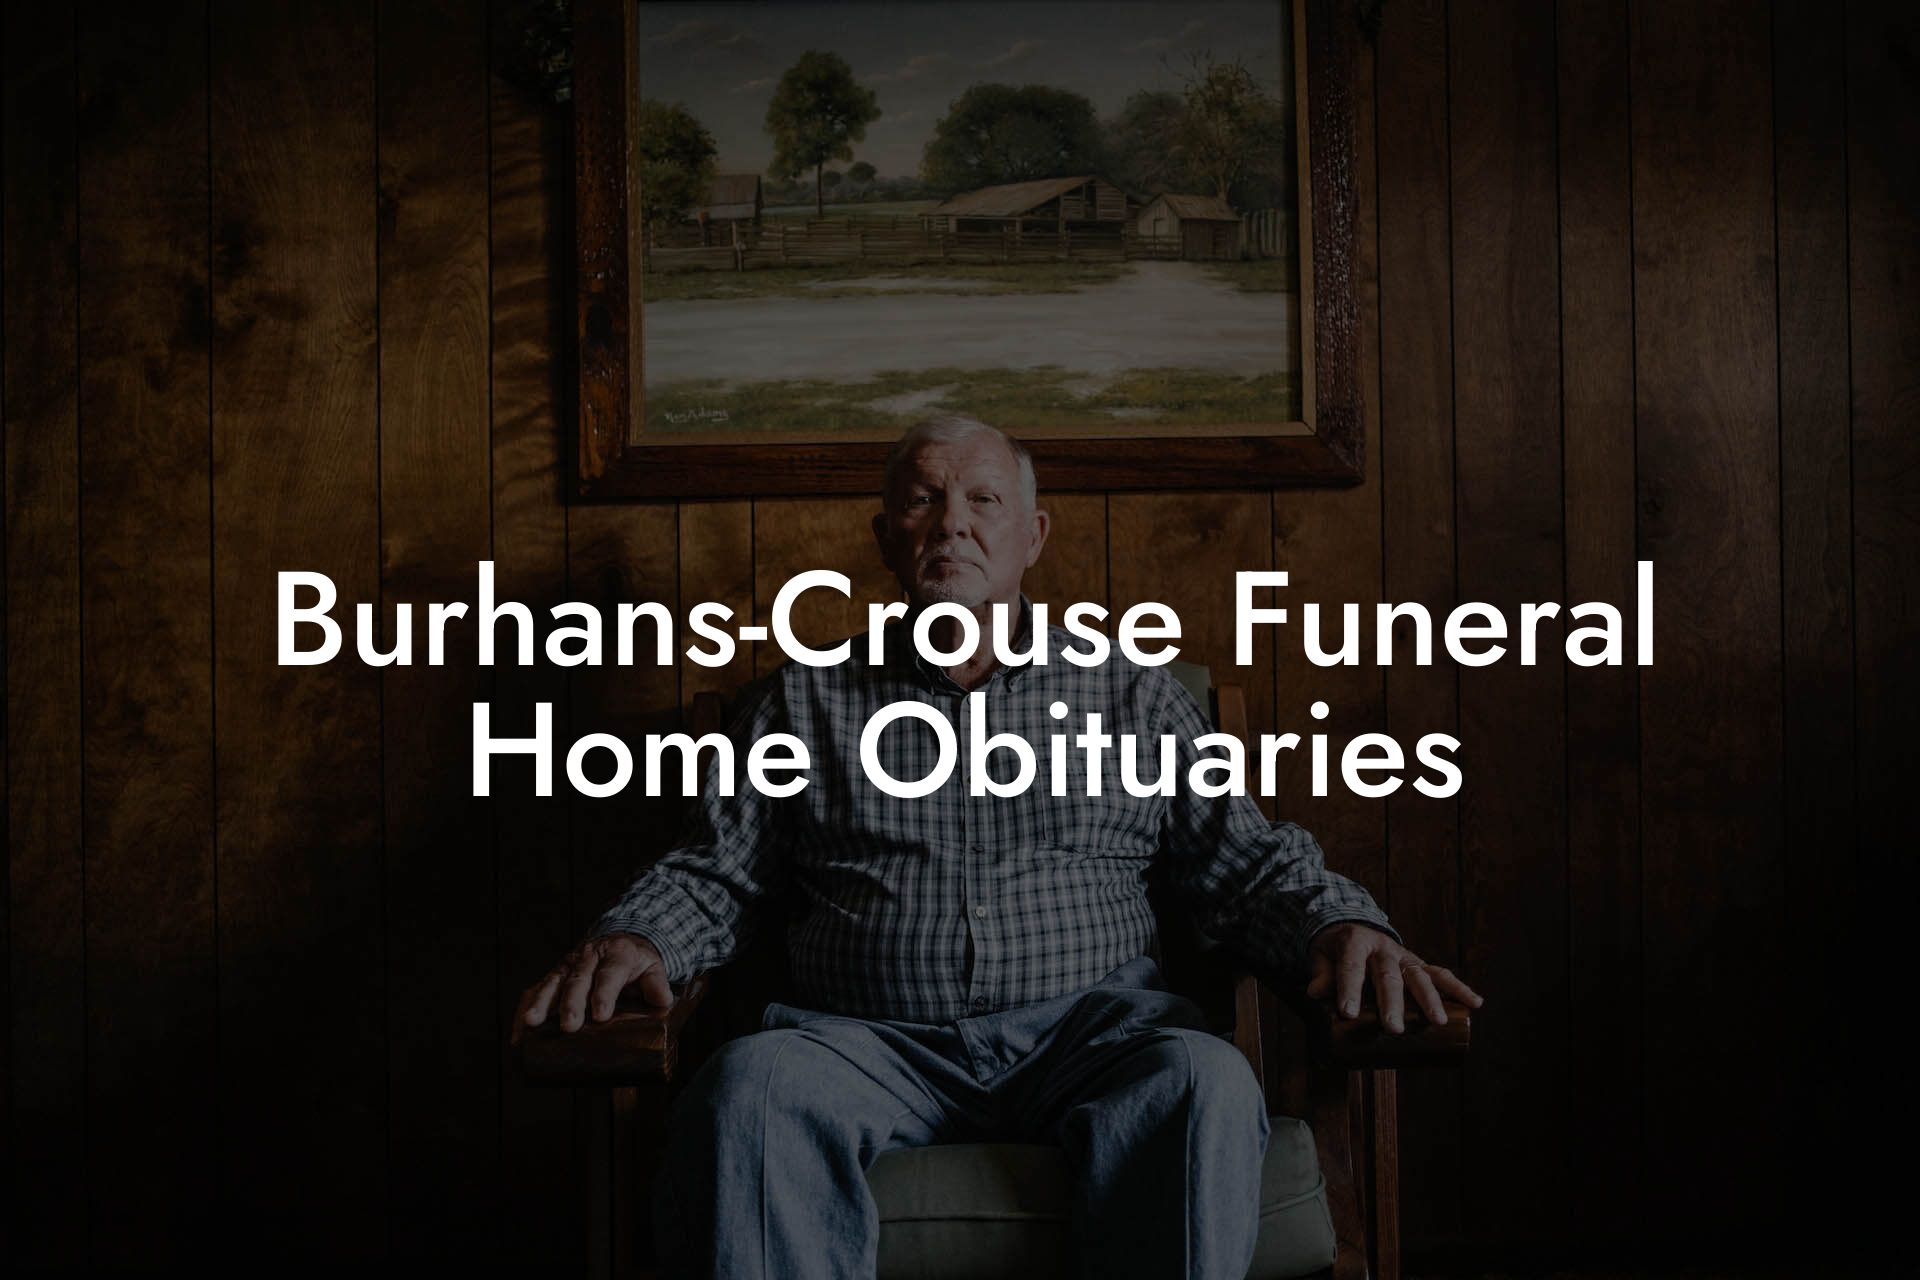 Burhans-Crouse Funeral Home Obituaries